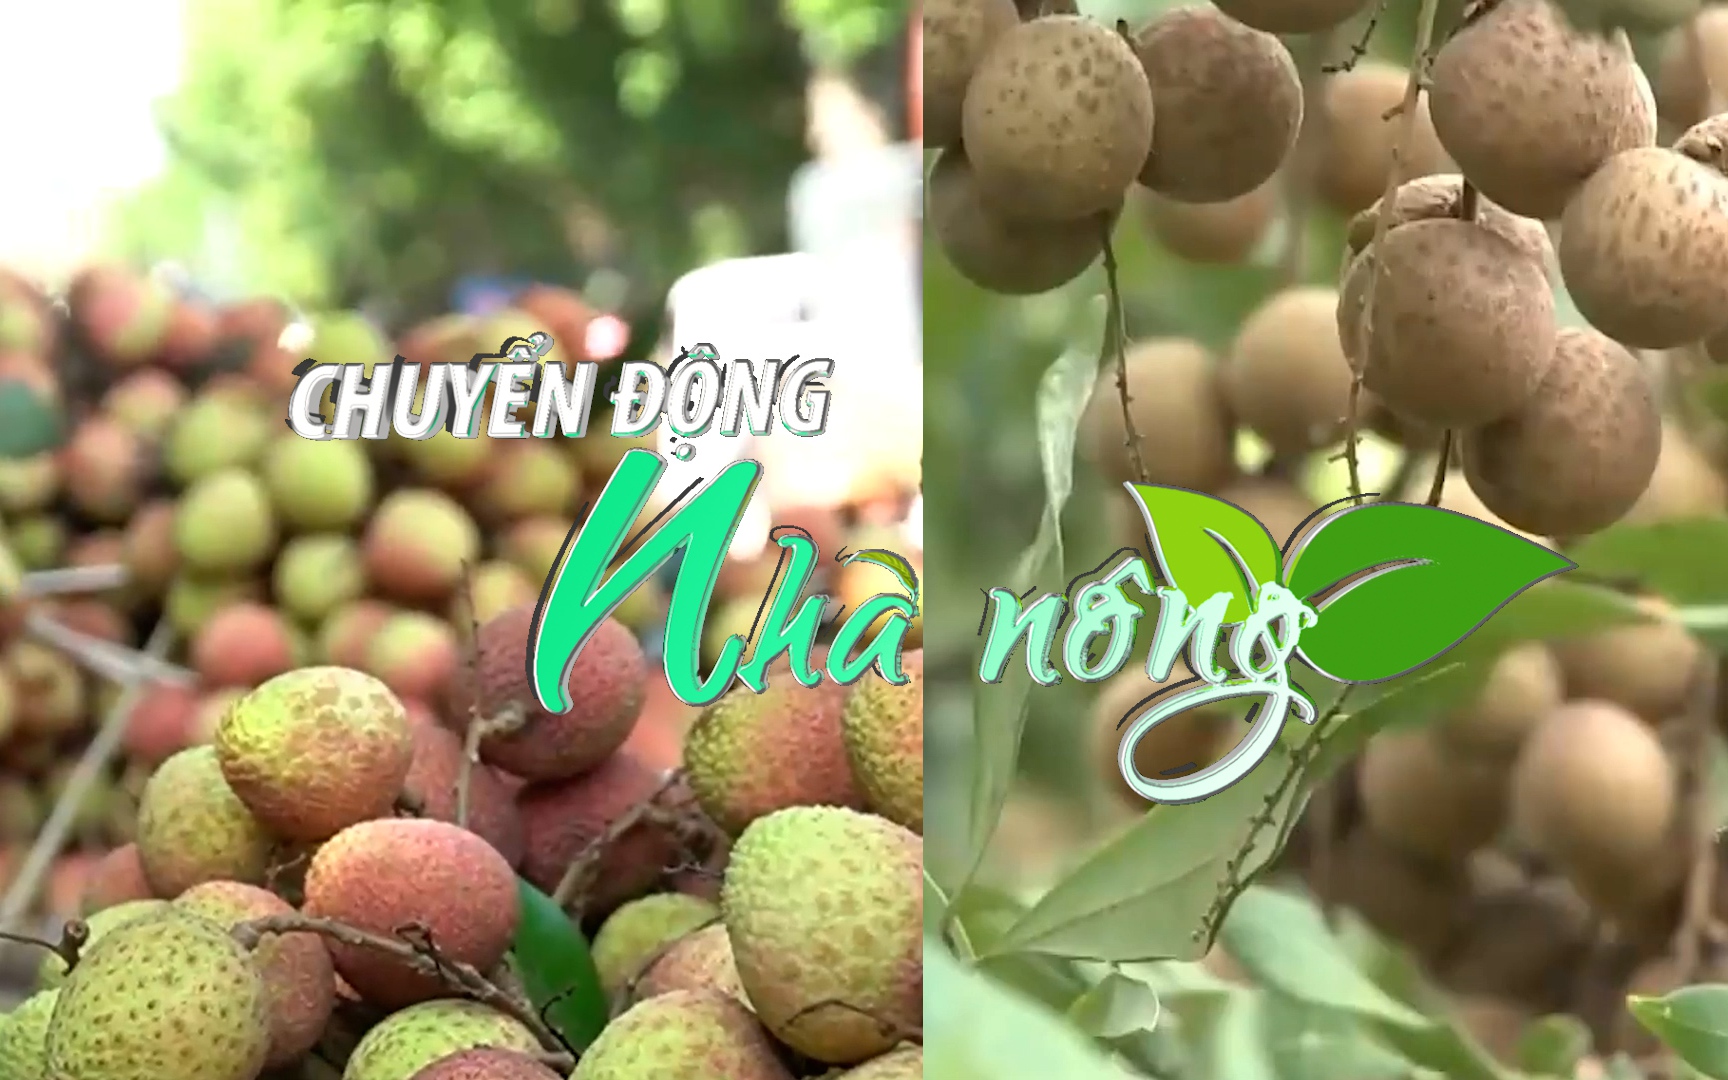 Chuyển động Nhà nông 3/6: Singapore - thị trường hấp dẫn của quả vải và nhãn tươi Việt Nam